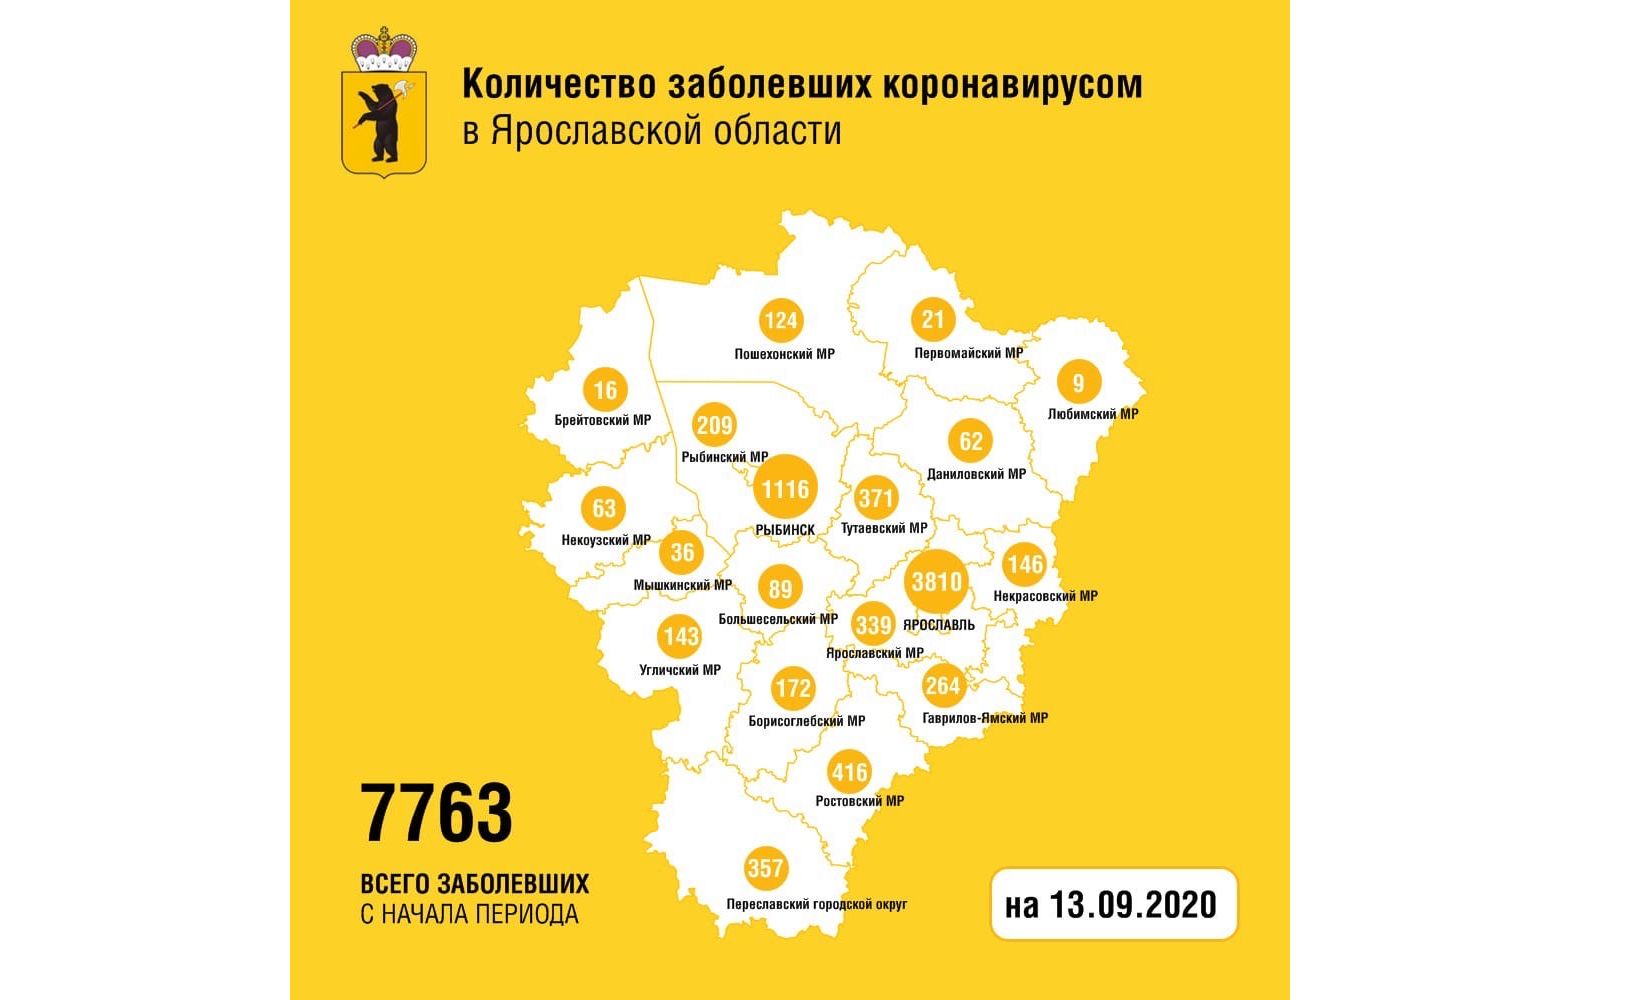 Еще четыре жителя Ярославской области вылечились от коронавируса